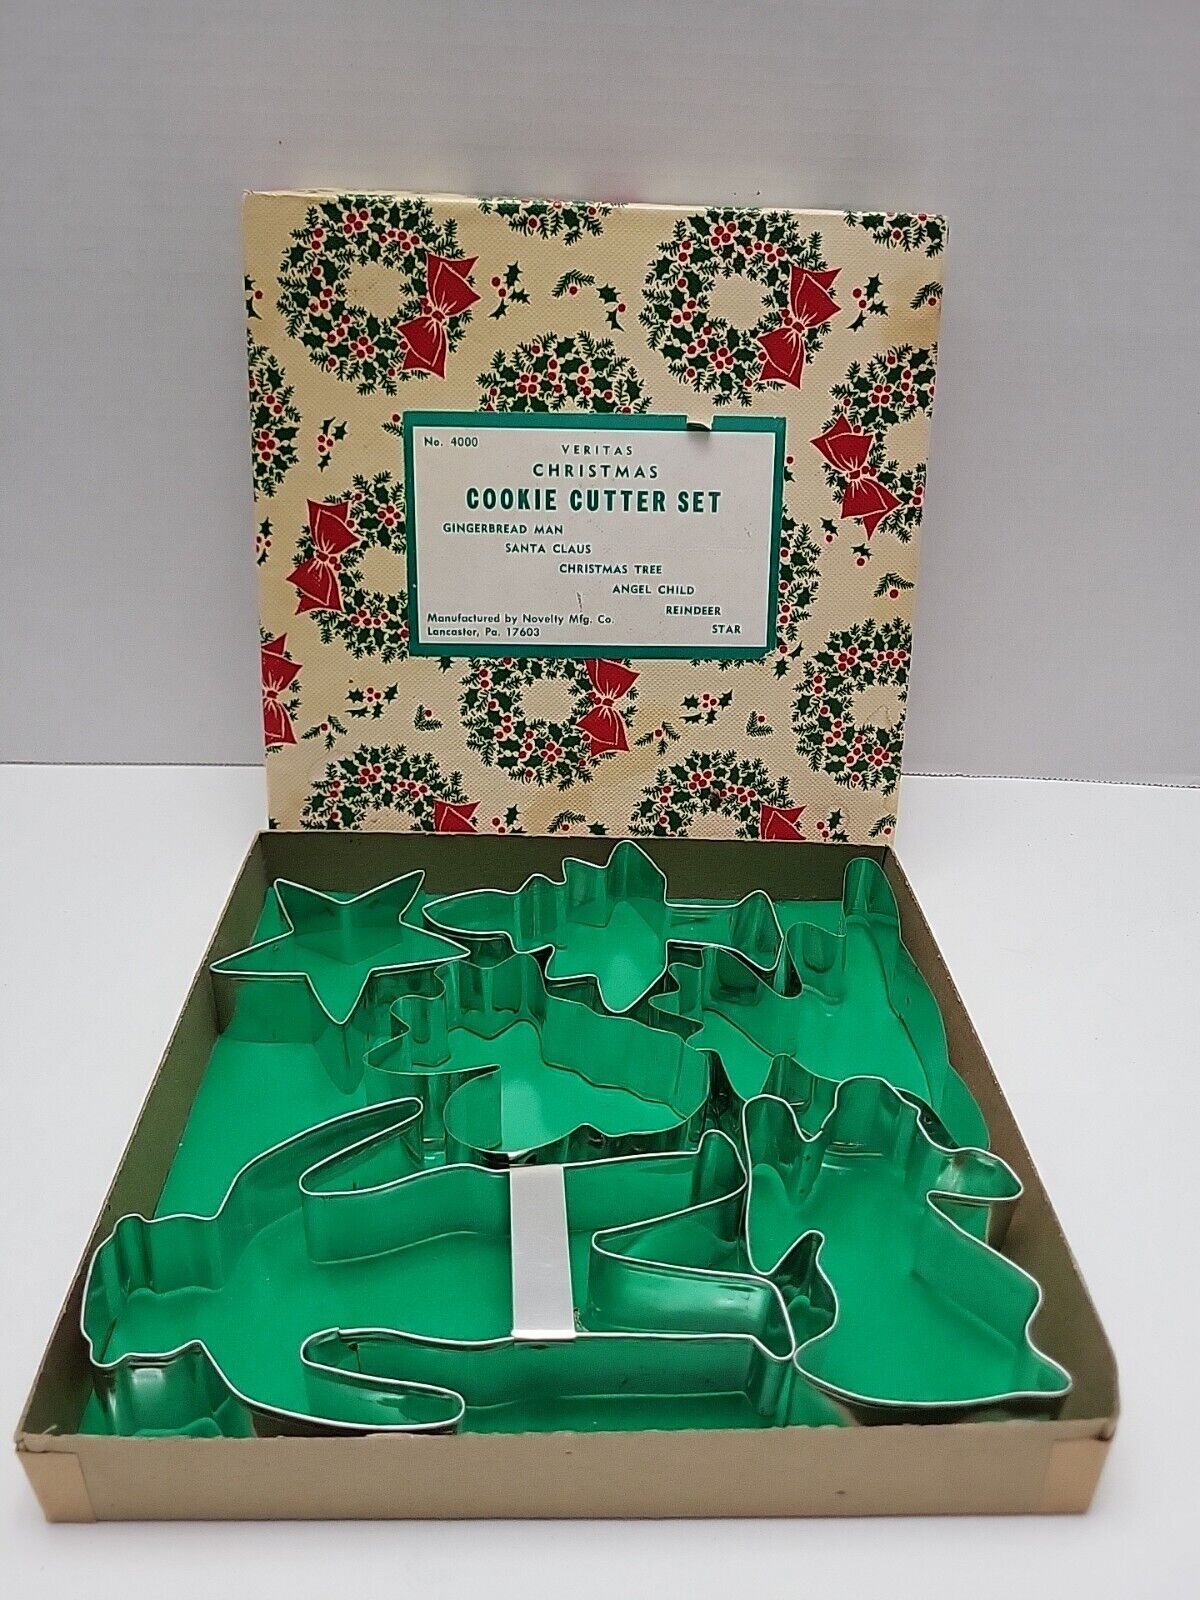 VERITAS CHRISTMAS COOKIE CUTTER SET GMT Co. New York No. 4000 Original Box